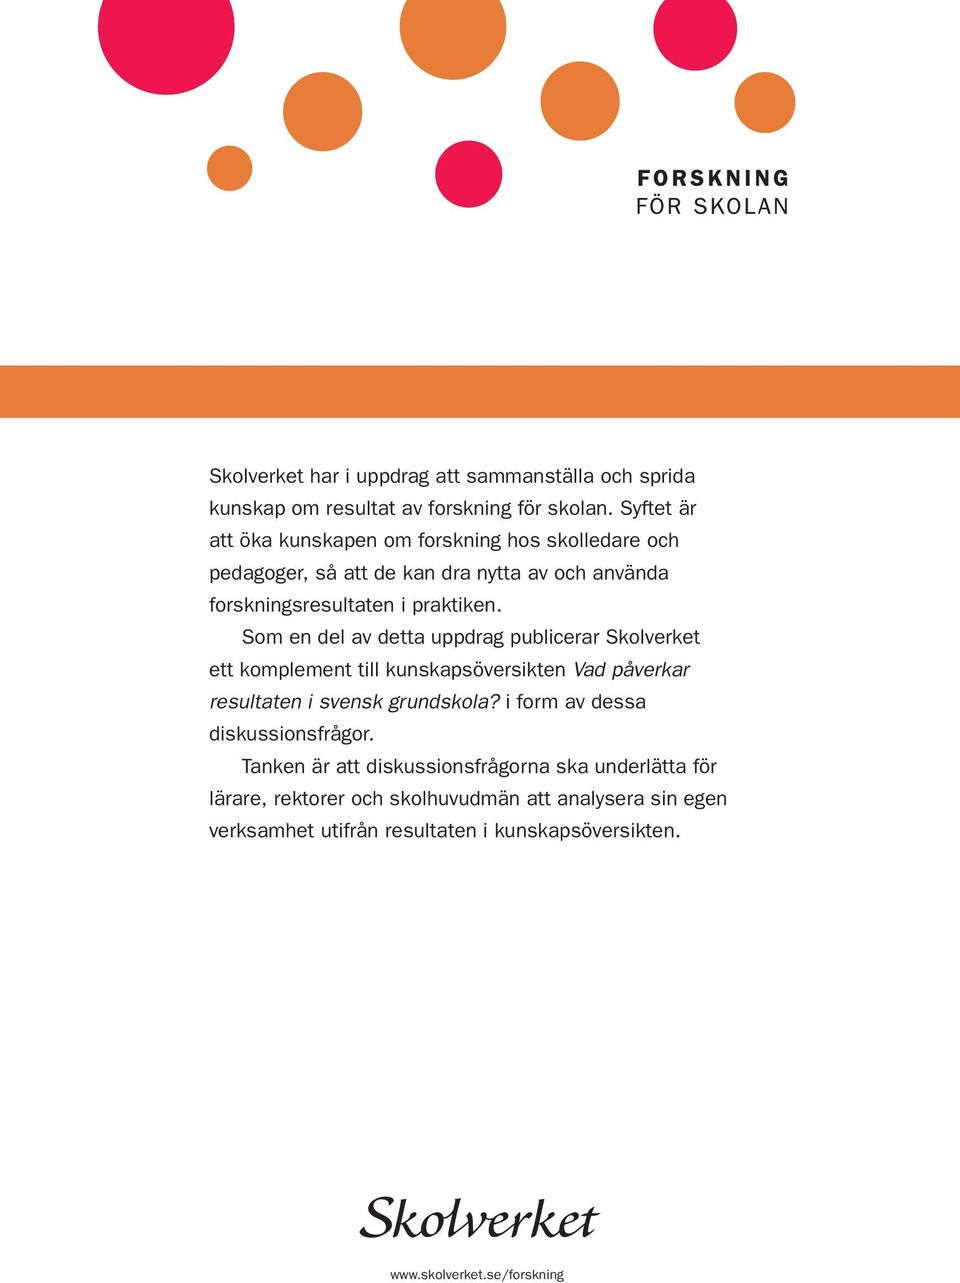 Som en del av detta uppdrag publicerar Skolverket ett komplement till kunskapsöversikten Vad påverkar resultaten i svensk grundskola?